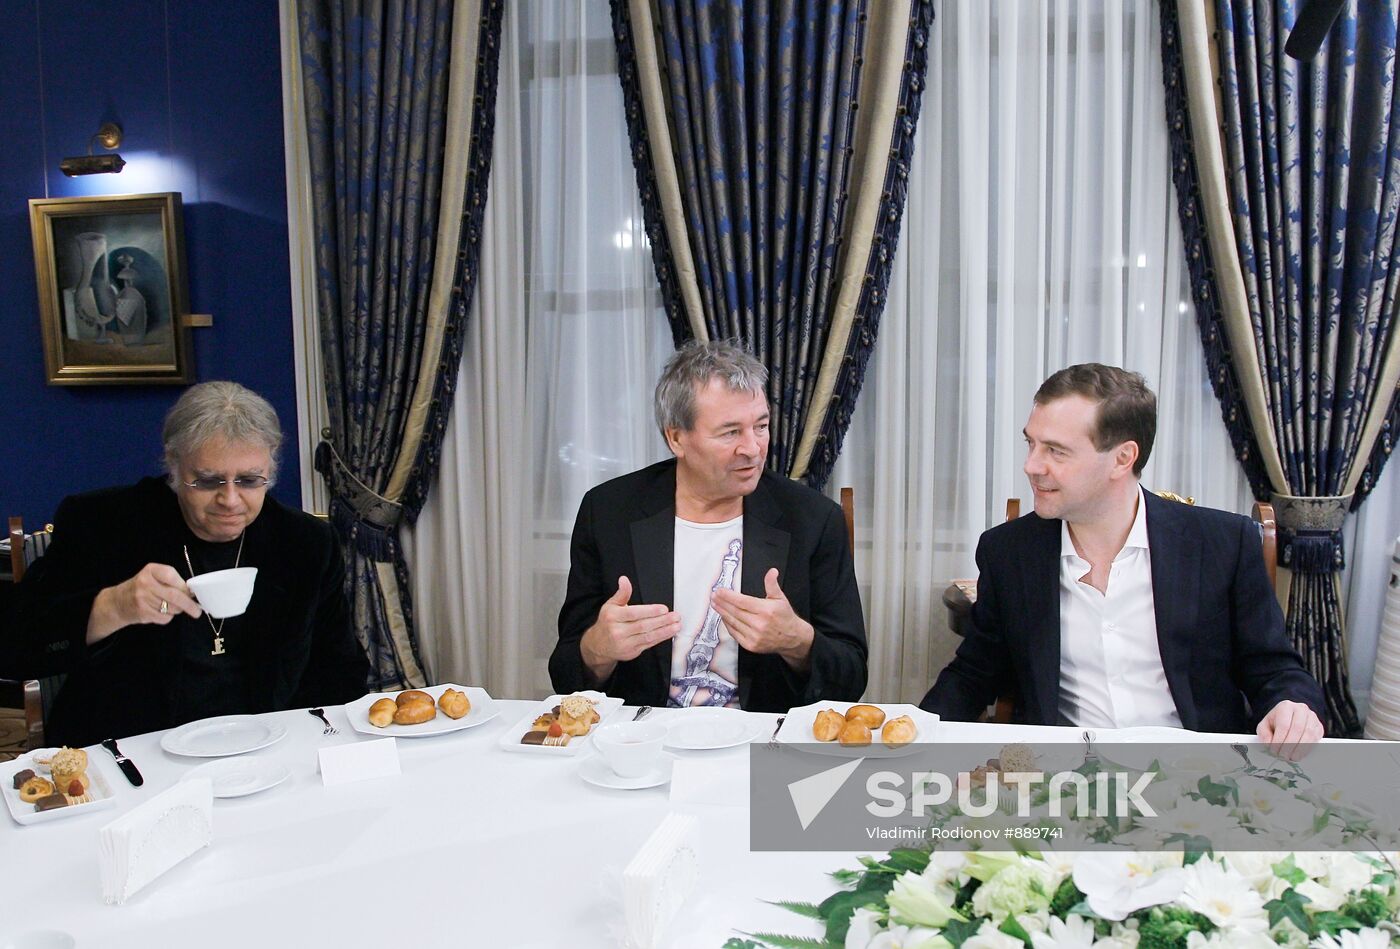 Dmitry Medvedev meets with Deep Purple band members